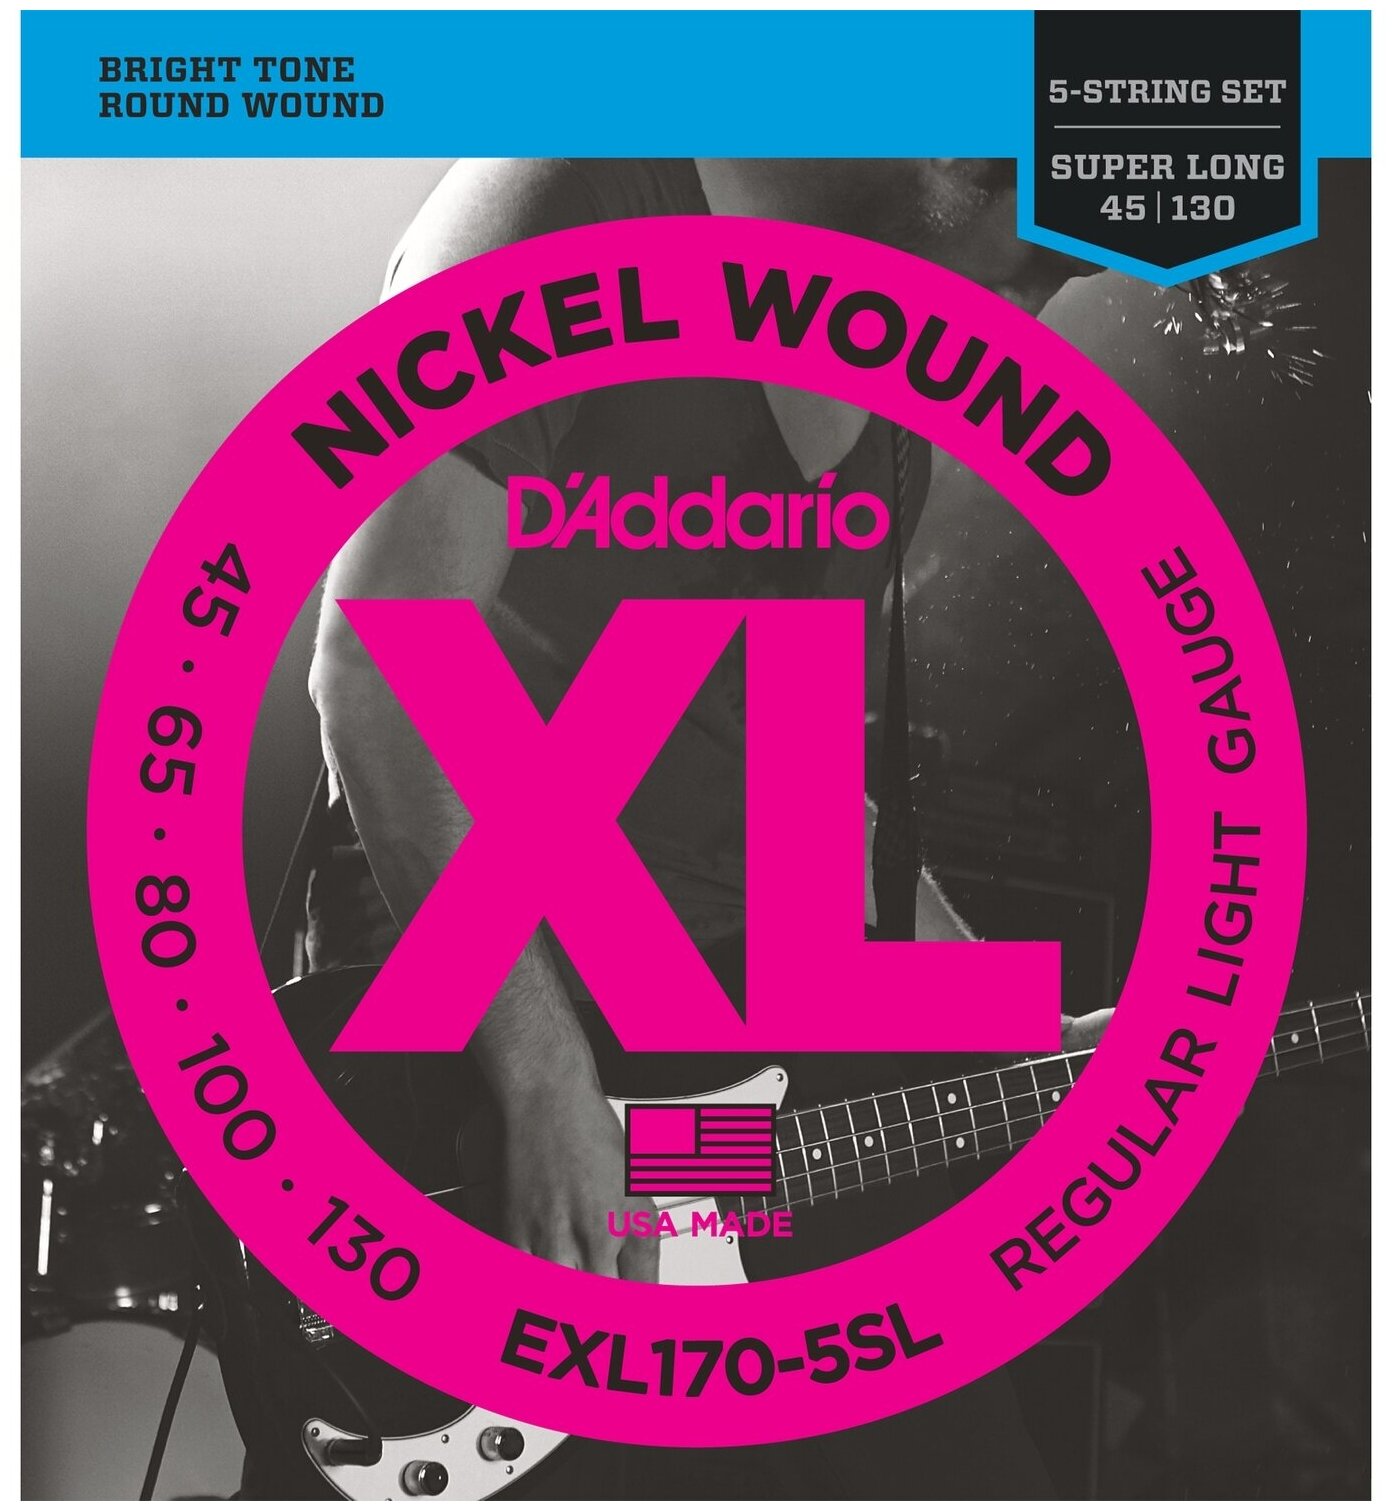 D'Addario EXL170-5SL Струны для 5-стр. бас-гит, Super long, 045-130